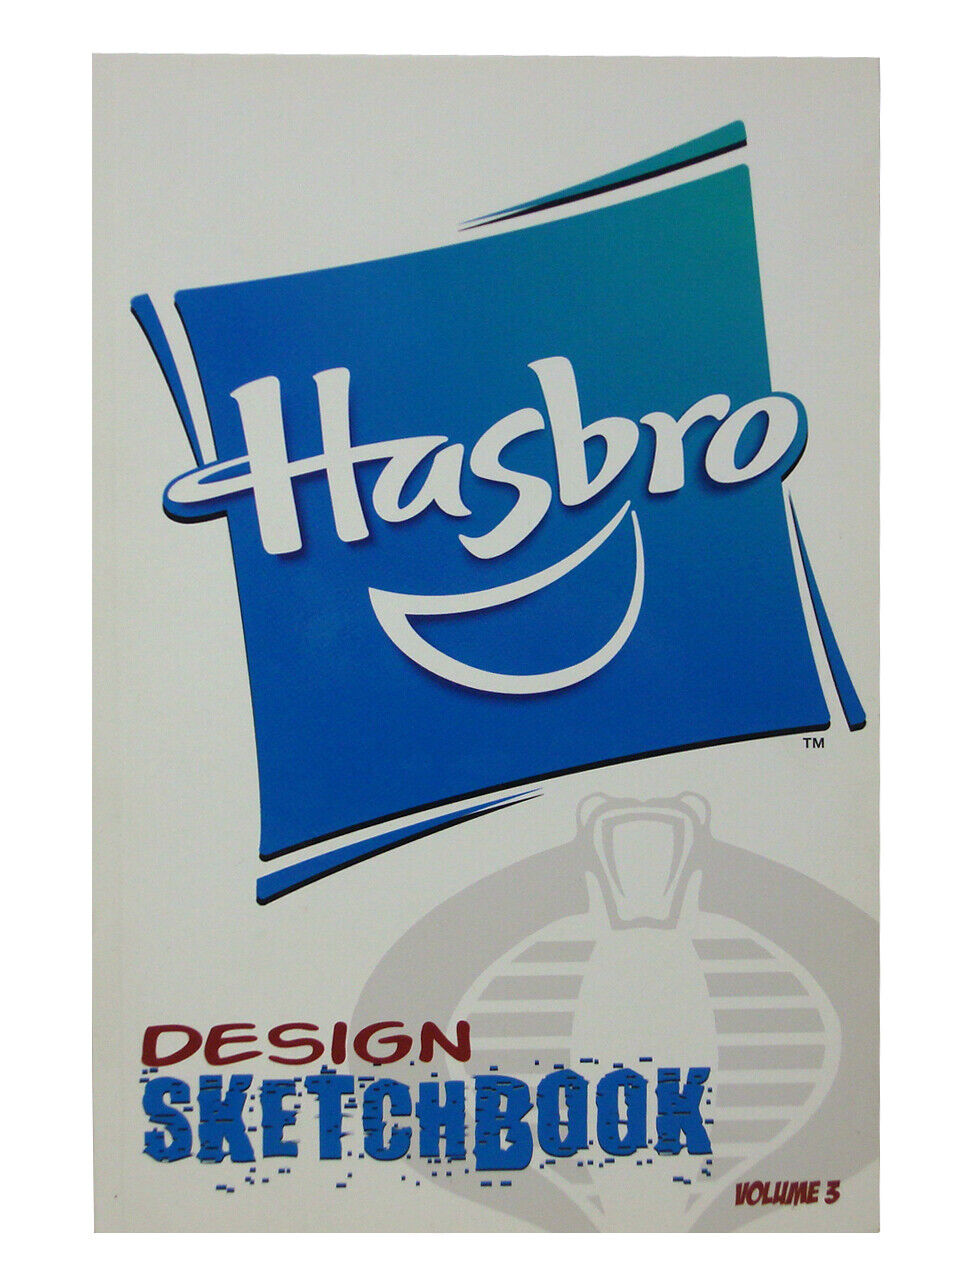 Hasbro Design Sketchbook Volume 3 Toys Transformers Star Wars Marvel 2011